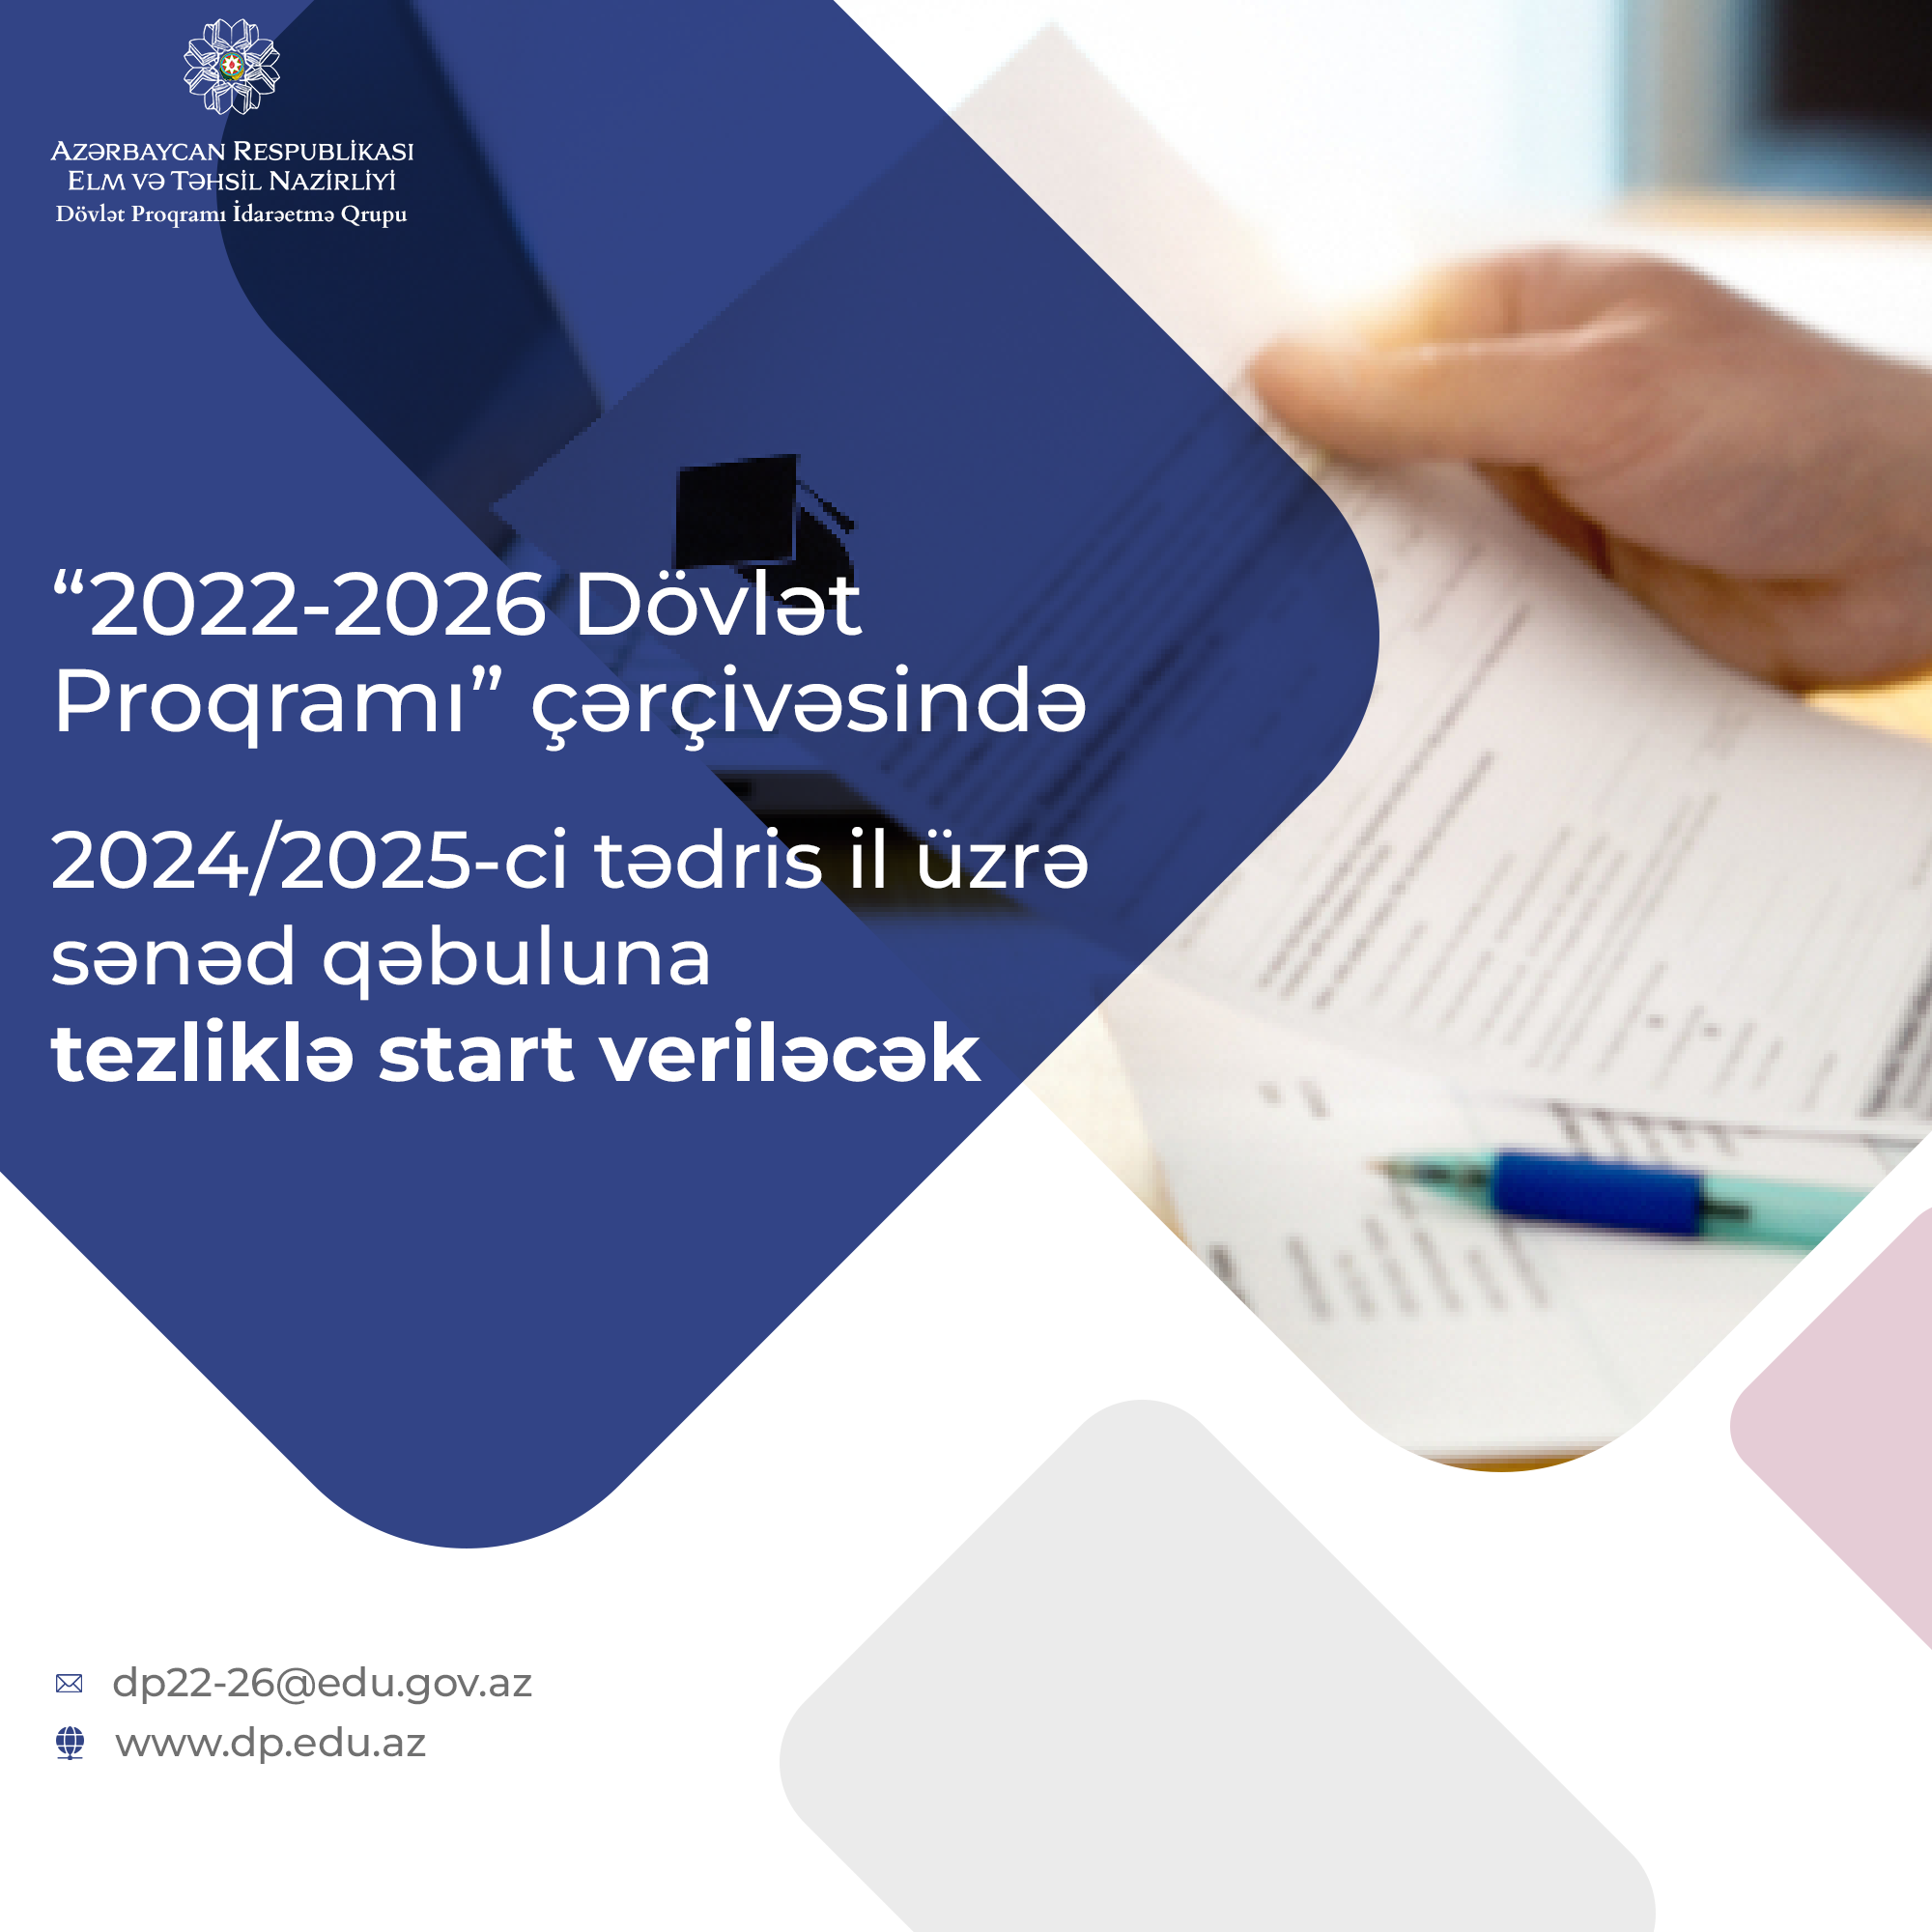 Dövlət Proqramı çərçivəsində 2024-2025-ci tədris ili üçün sənəd qəbuluna başlanılacaq